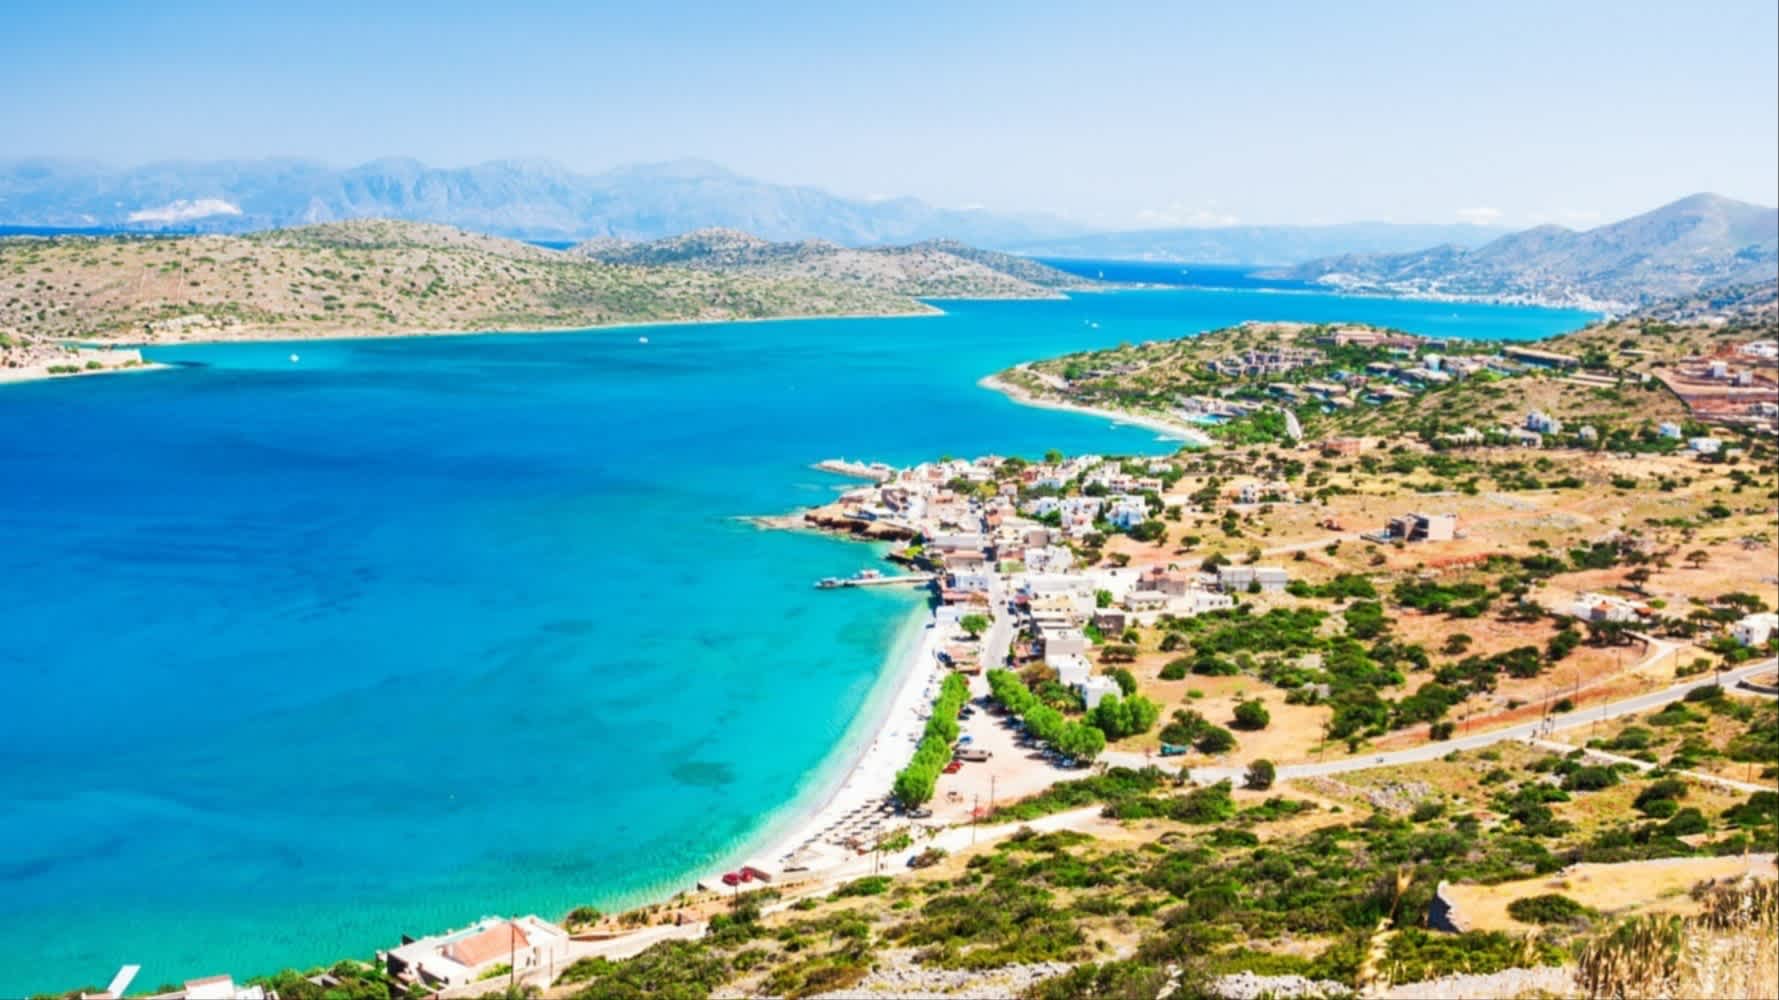 Vue panoramique sur le bord de mer et l'île de Spinalonga à Elounda, sur l'île de Crète, en Grèce.

